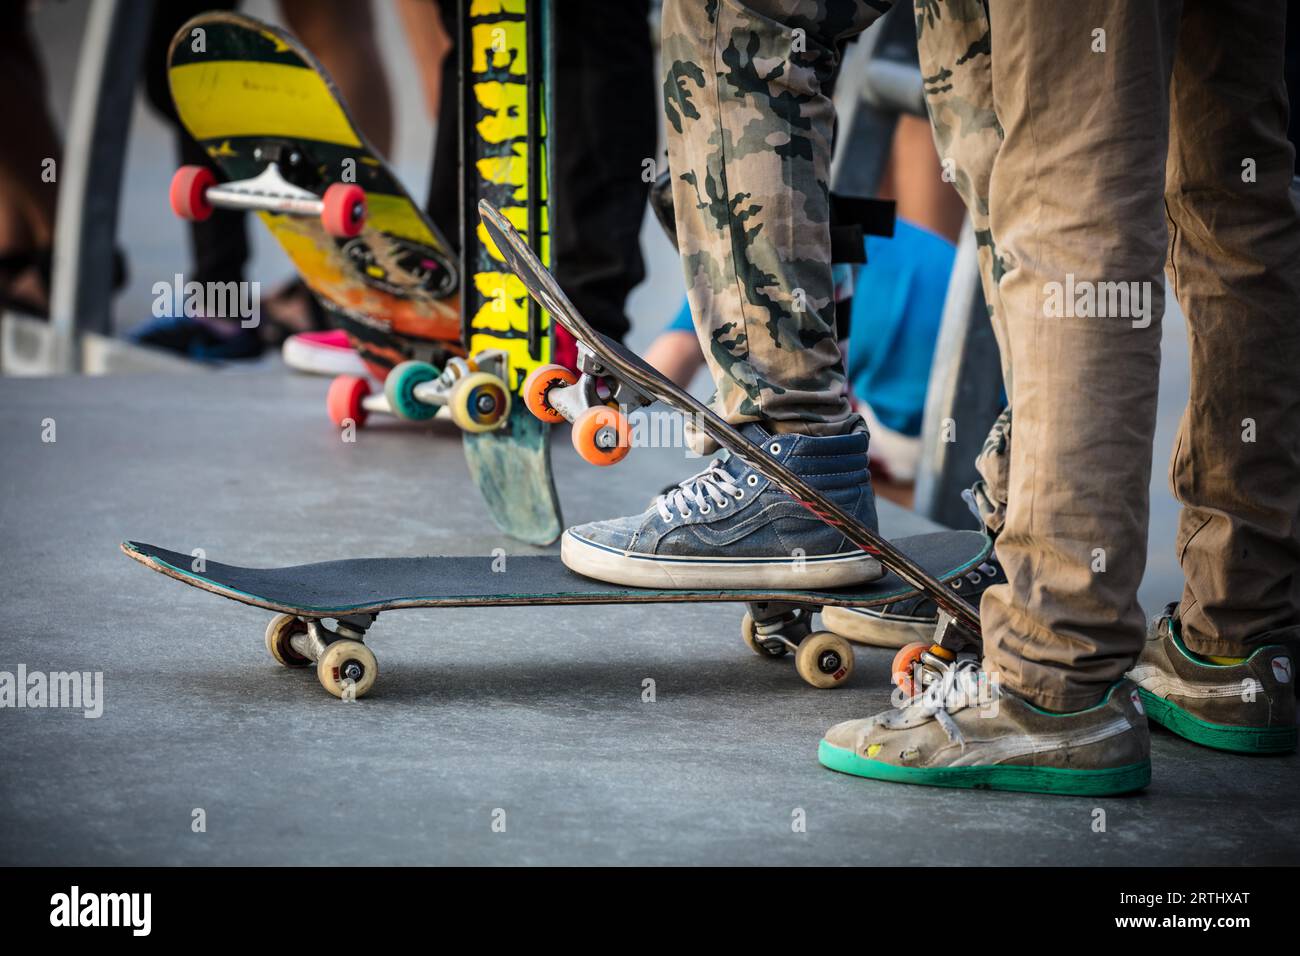 Ein Skateboarder in Aktion am Venice Beach Skate Park in Los Angeles, Kalifornien, USA Stockfoto